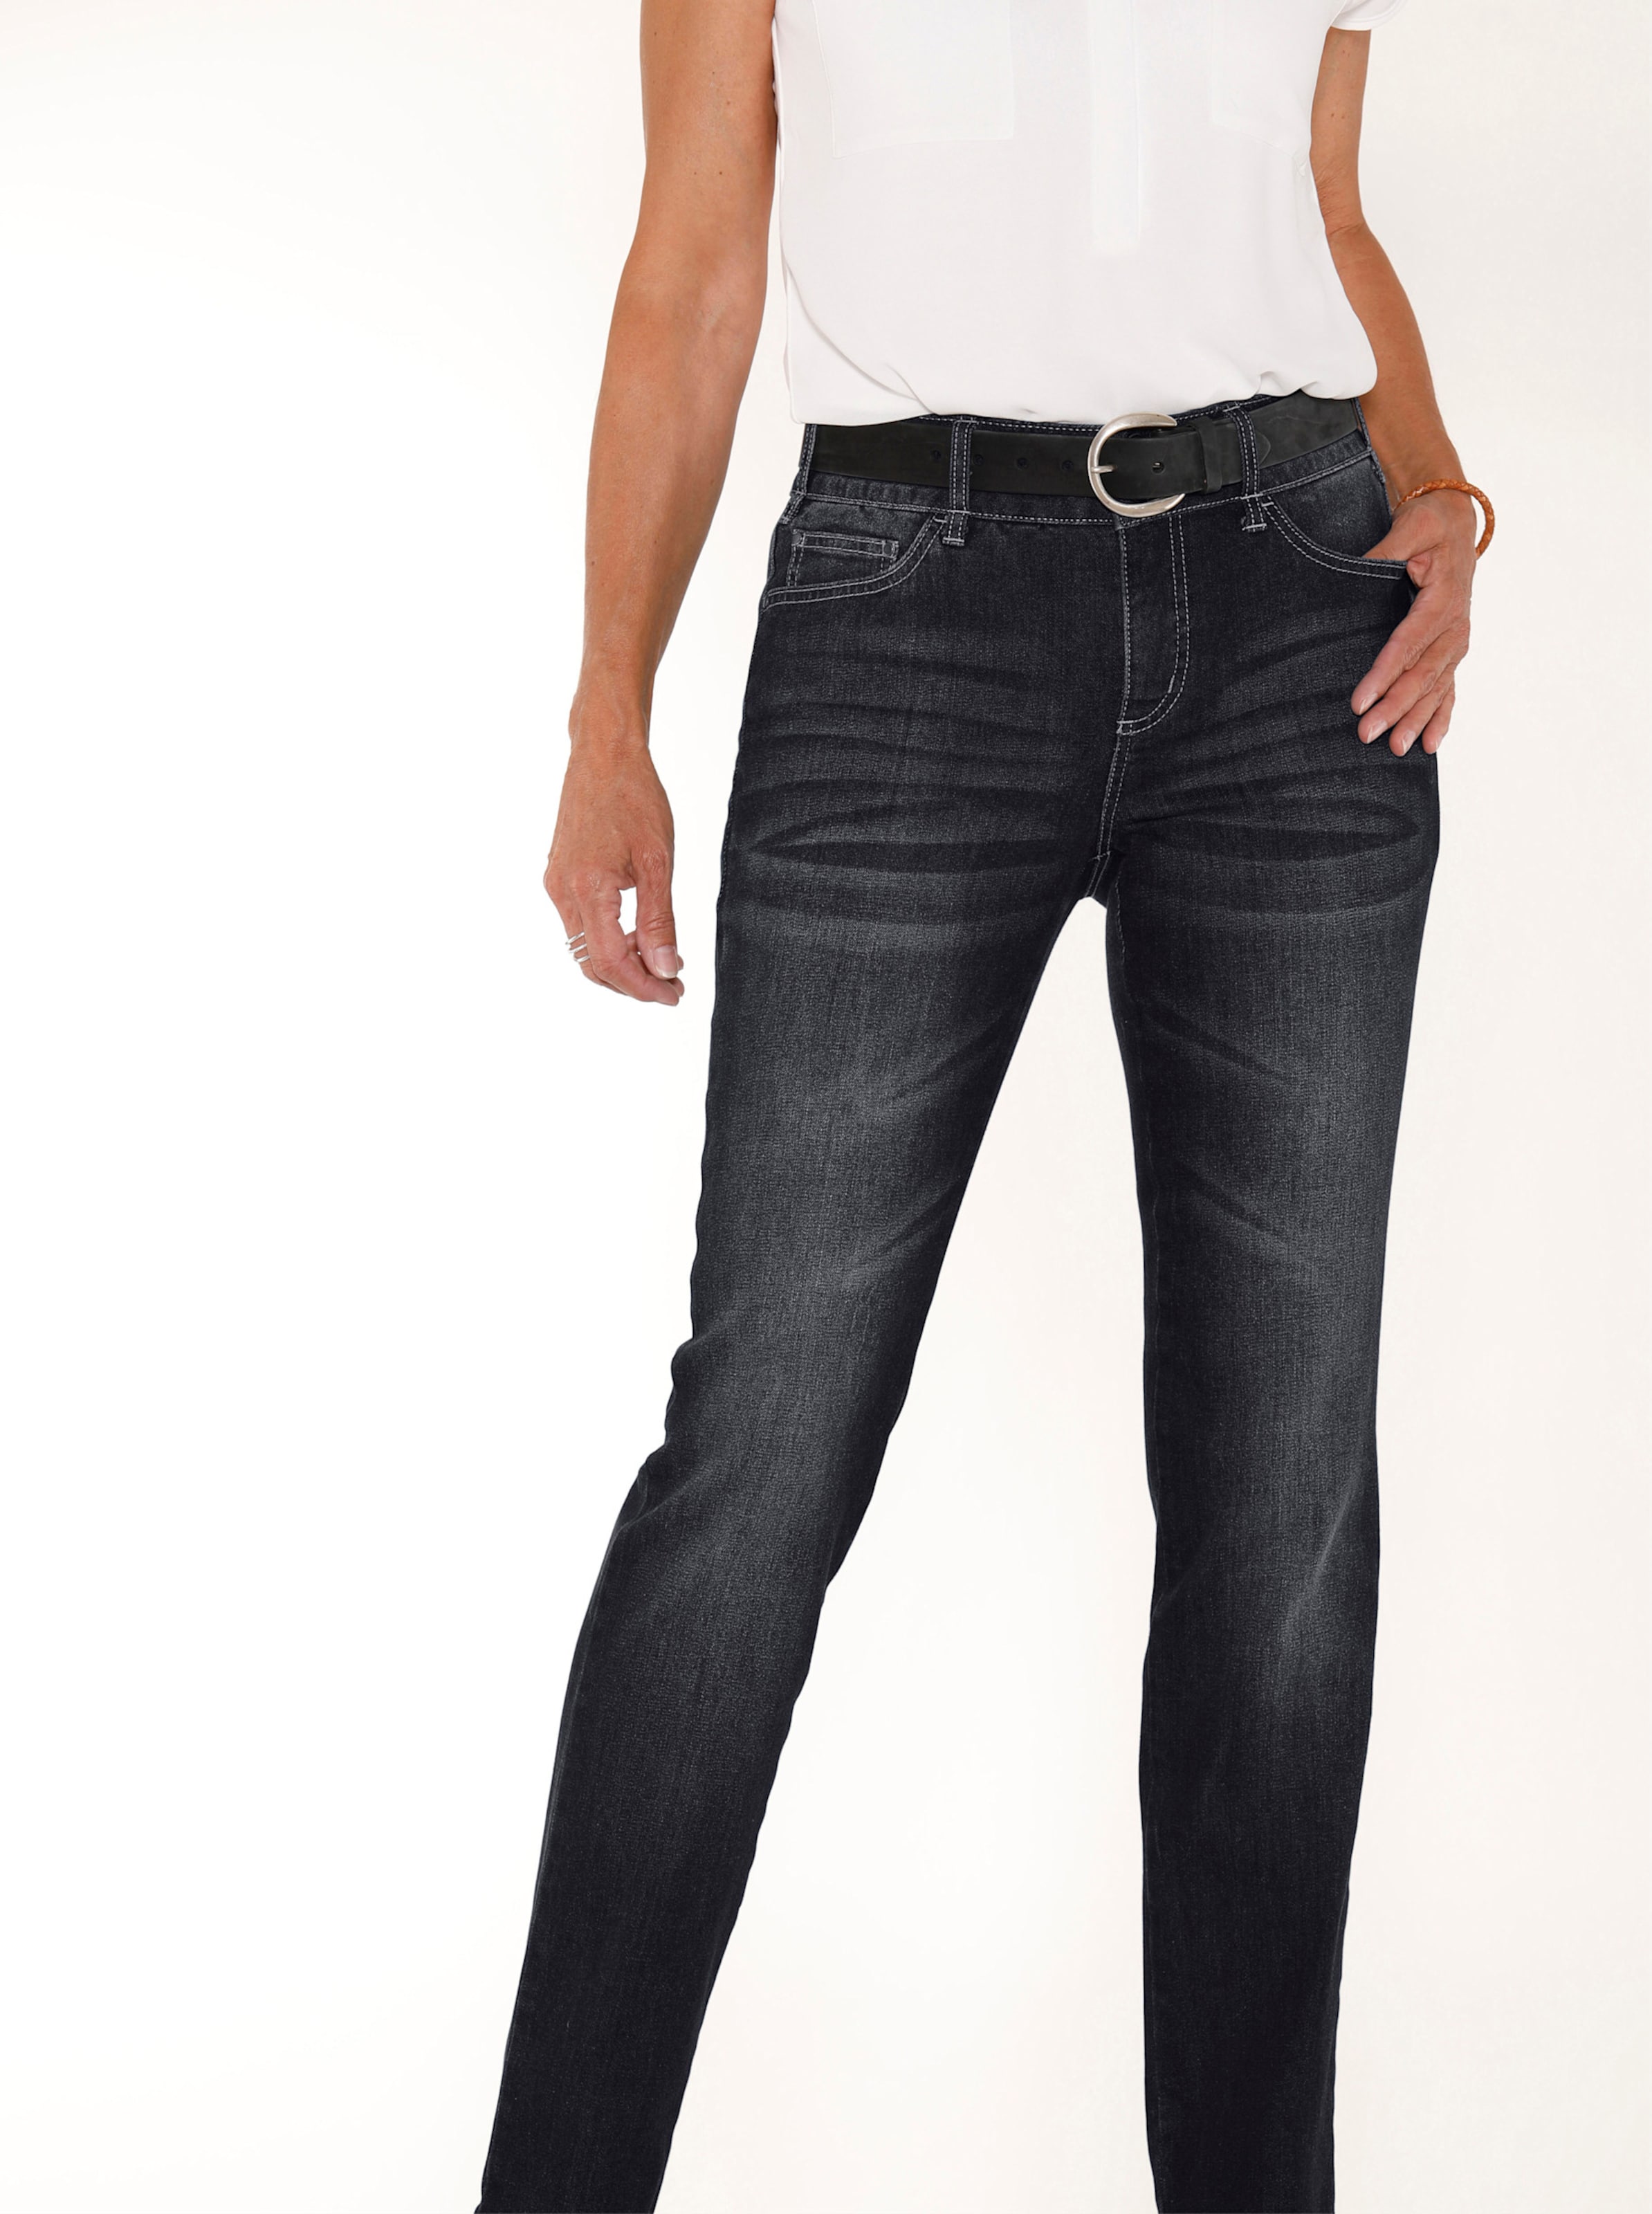 Witt Damen Jeans mit Nieten an den Taschen, black-denim